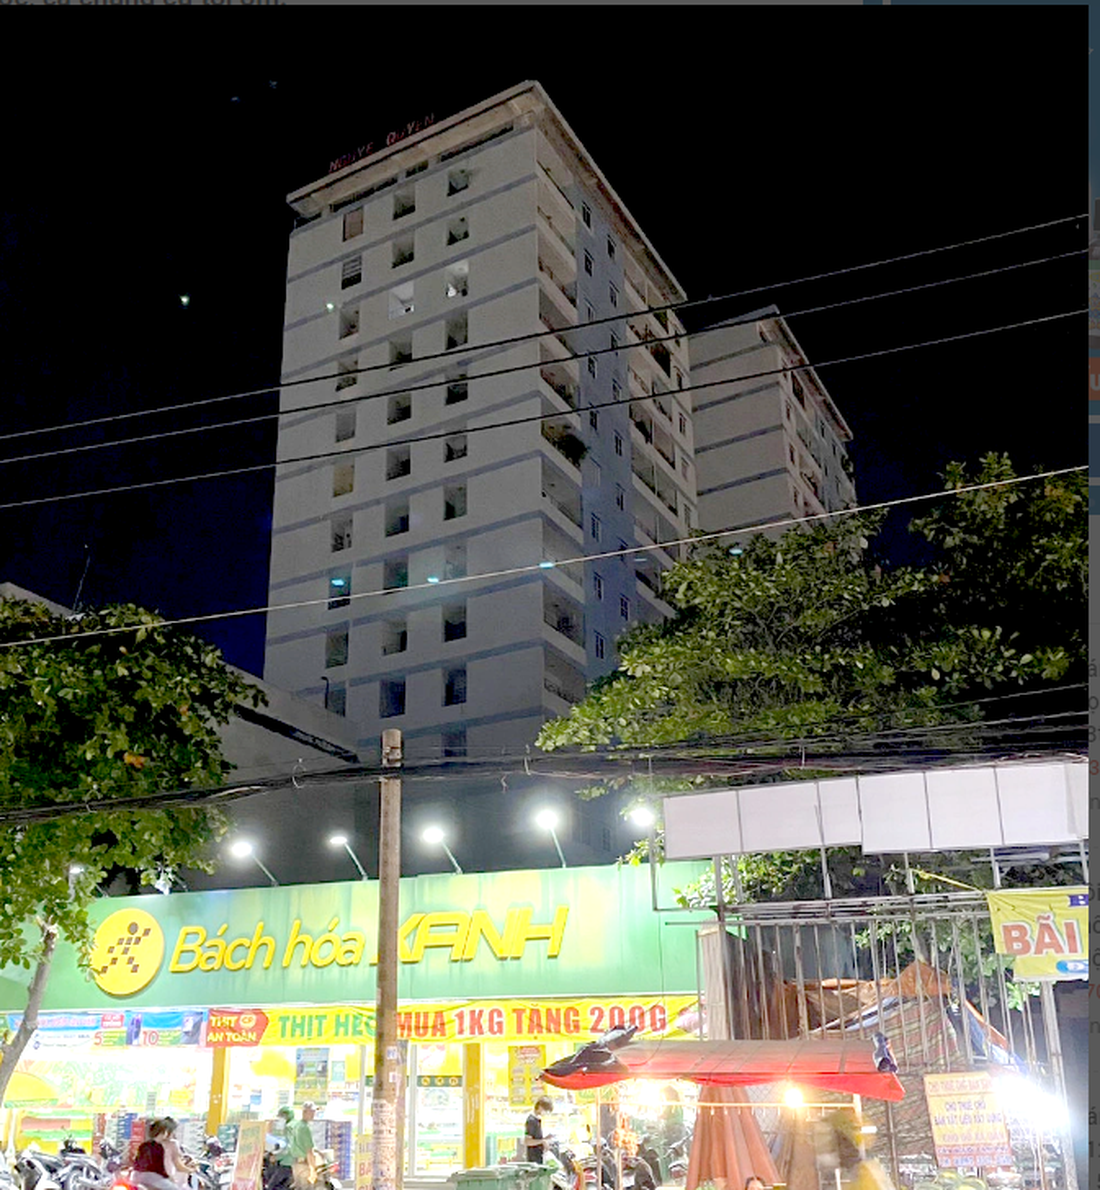 Chung cư Nguyễn Quyền (phía sau Bách Hóa Xanh) bị cắt điện tối om vào tối 26-6 do chủ đầu tư chưa đóng tiền điện khiến người dân vạ lây - Ảnh: T.K.